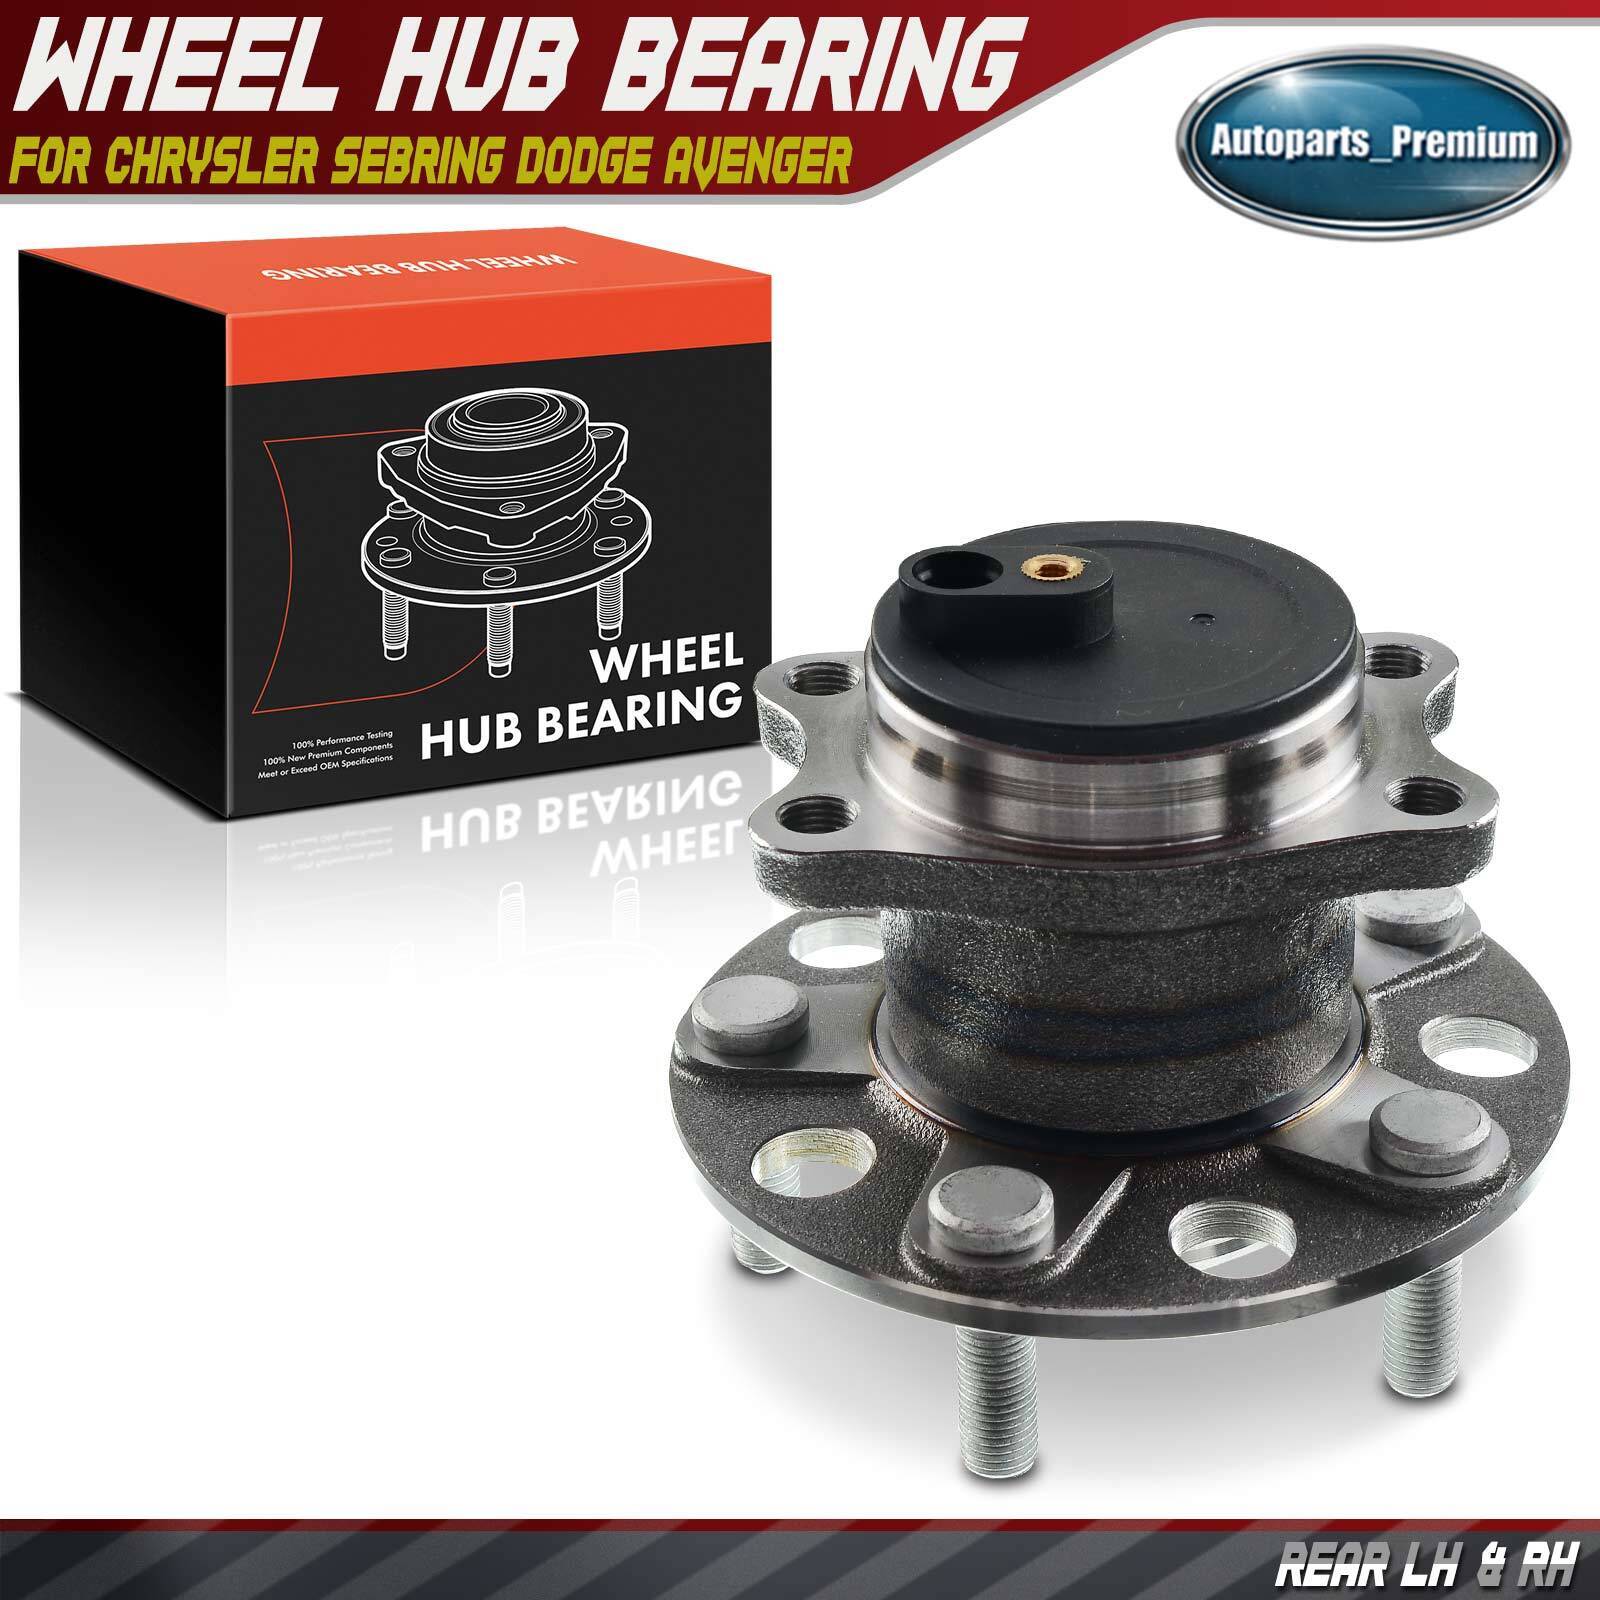 Rear Wheel Bearing & Hub Assembly for Chrysler 200 2011-14 Chrysler Sebring FWD